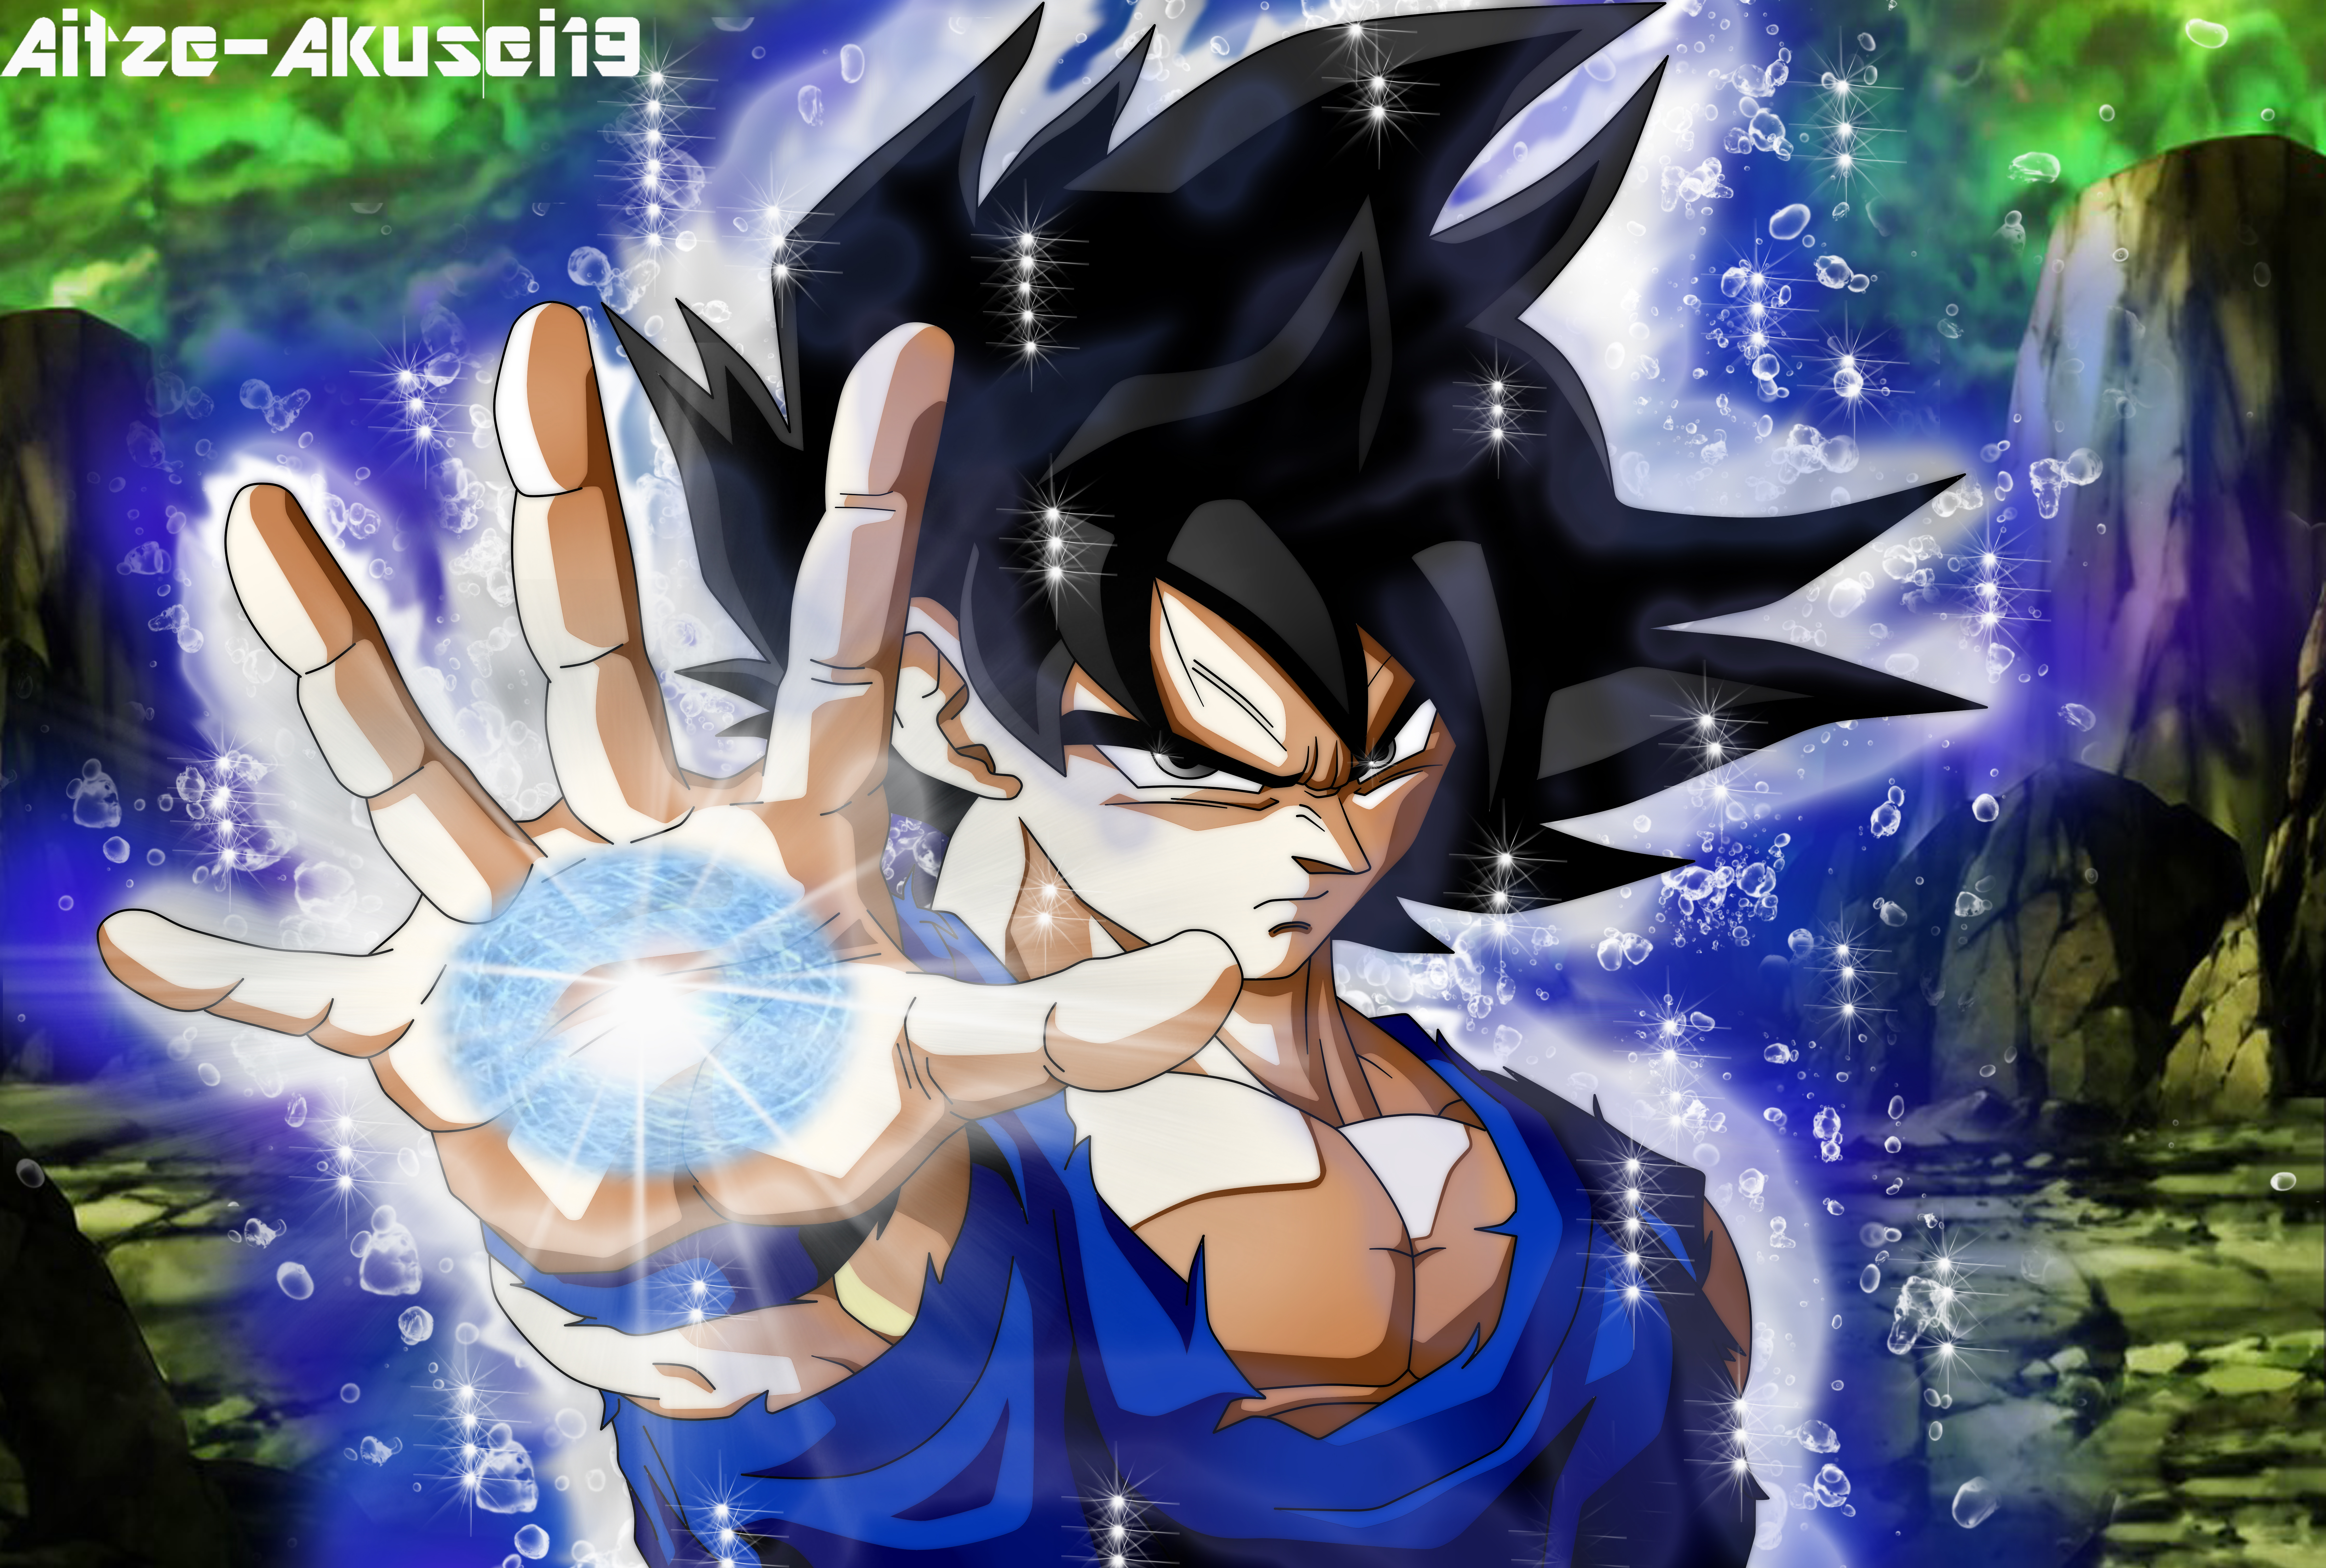 Goku Ultra Instinto by aitze-akusei19 on DeviantArt